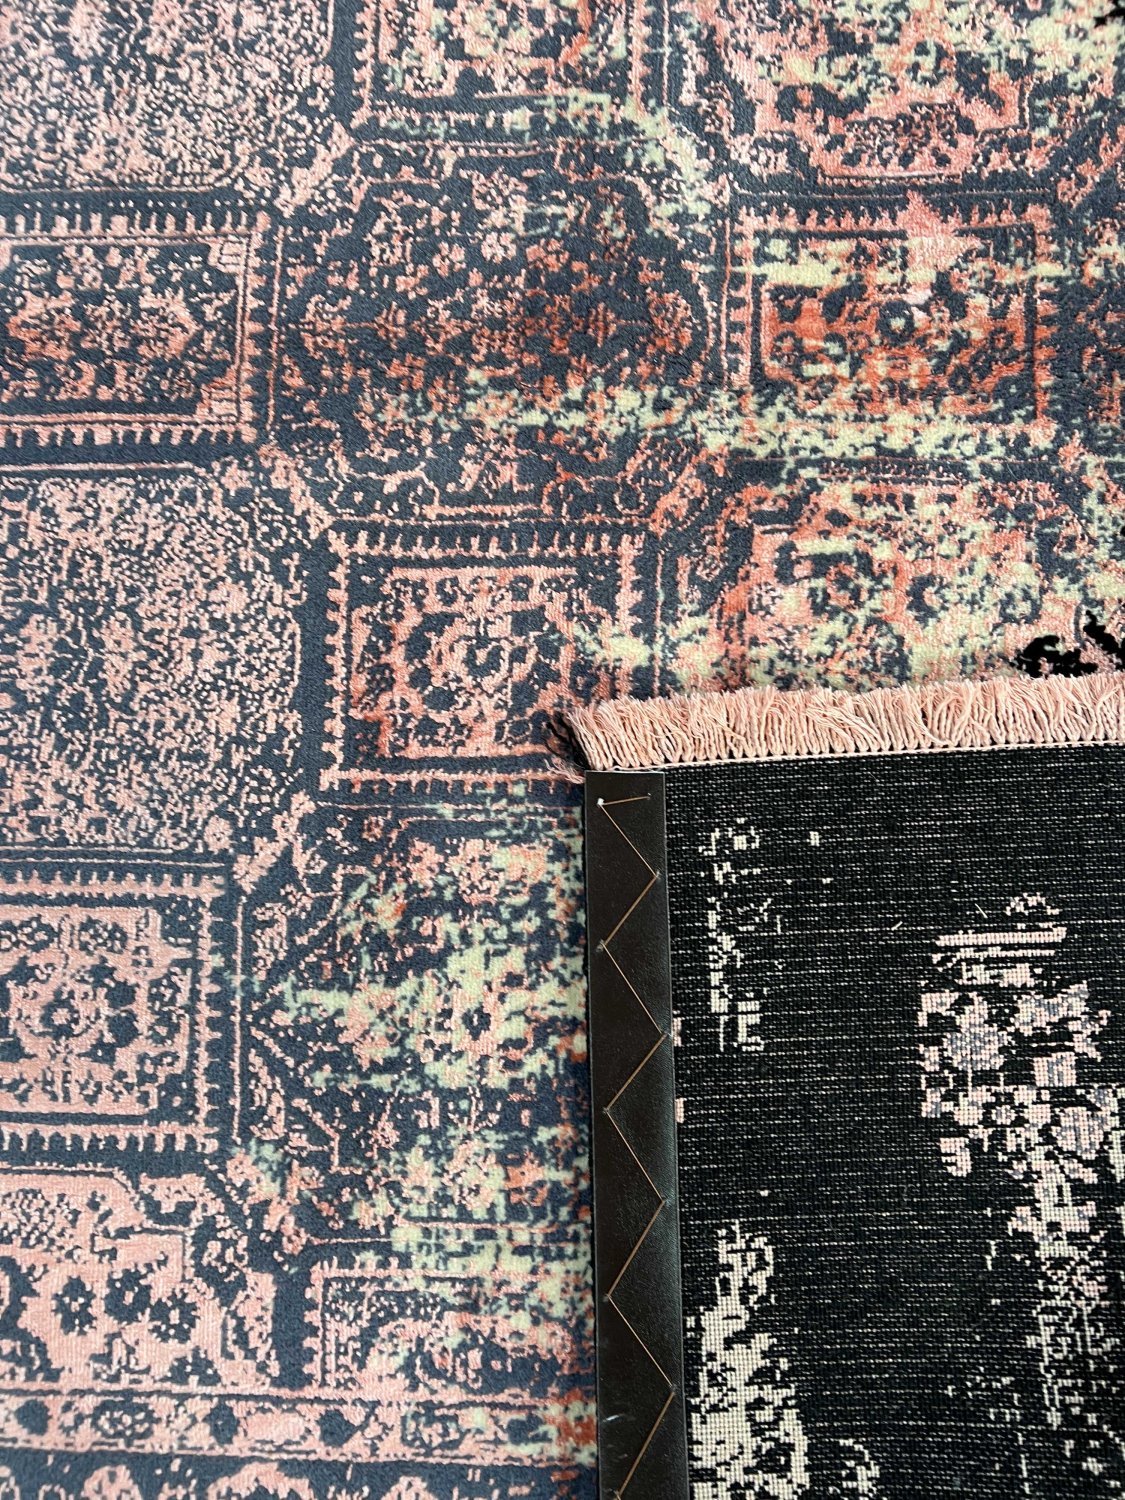 فرش پشمی ماشینی طبیعی و ارگانیک کد 0127 - زمینه مشکی - حاشیه گلبهی